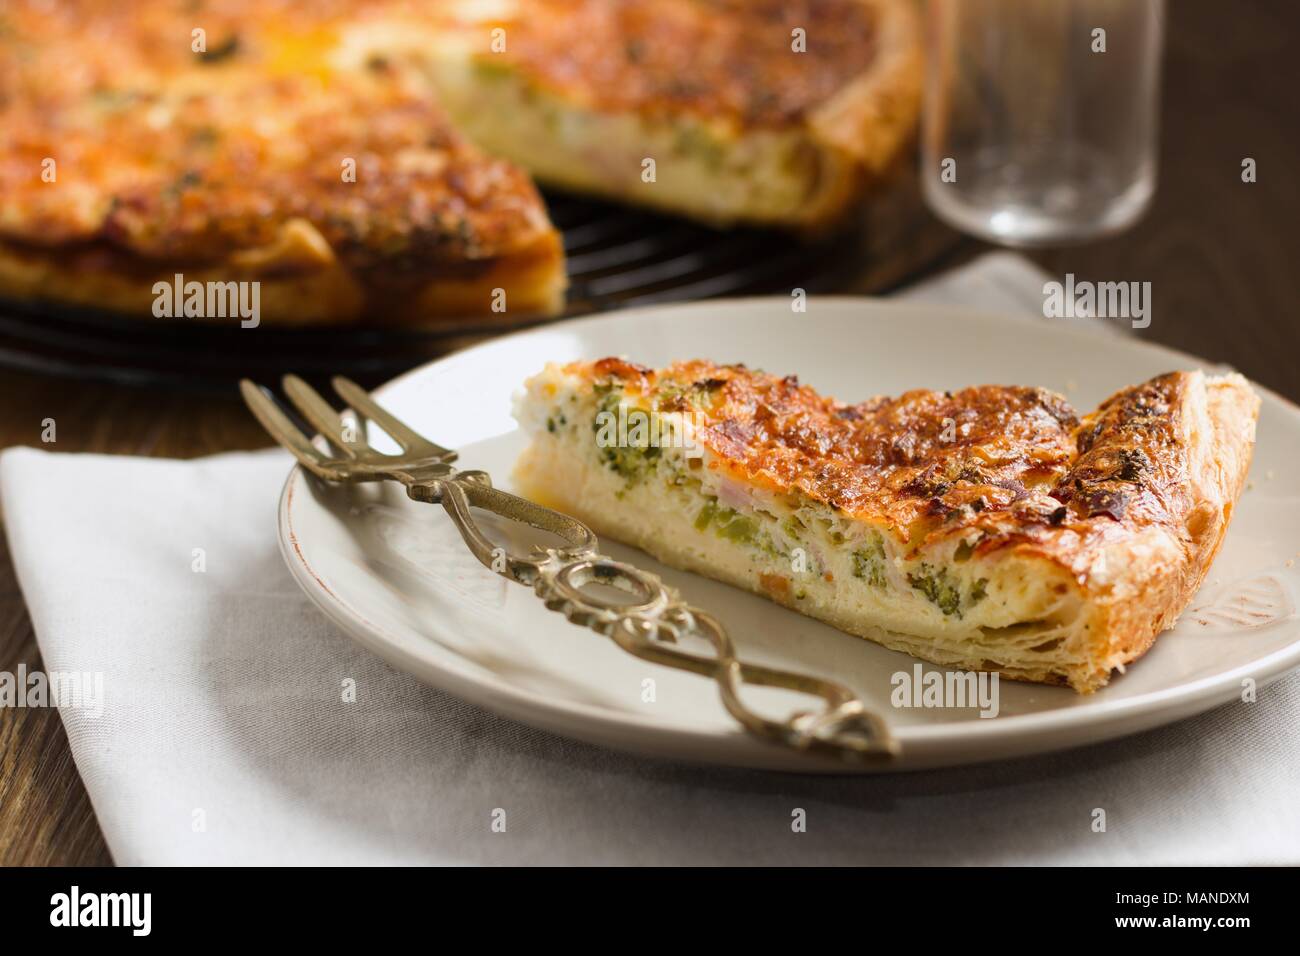 Fetta di torta di verdure o quiche, servita su una piastra Foto Stock